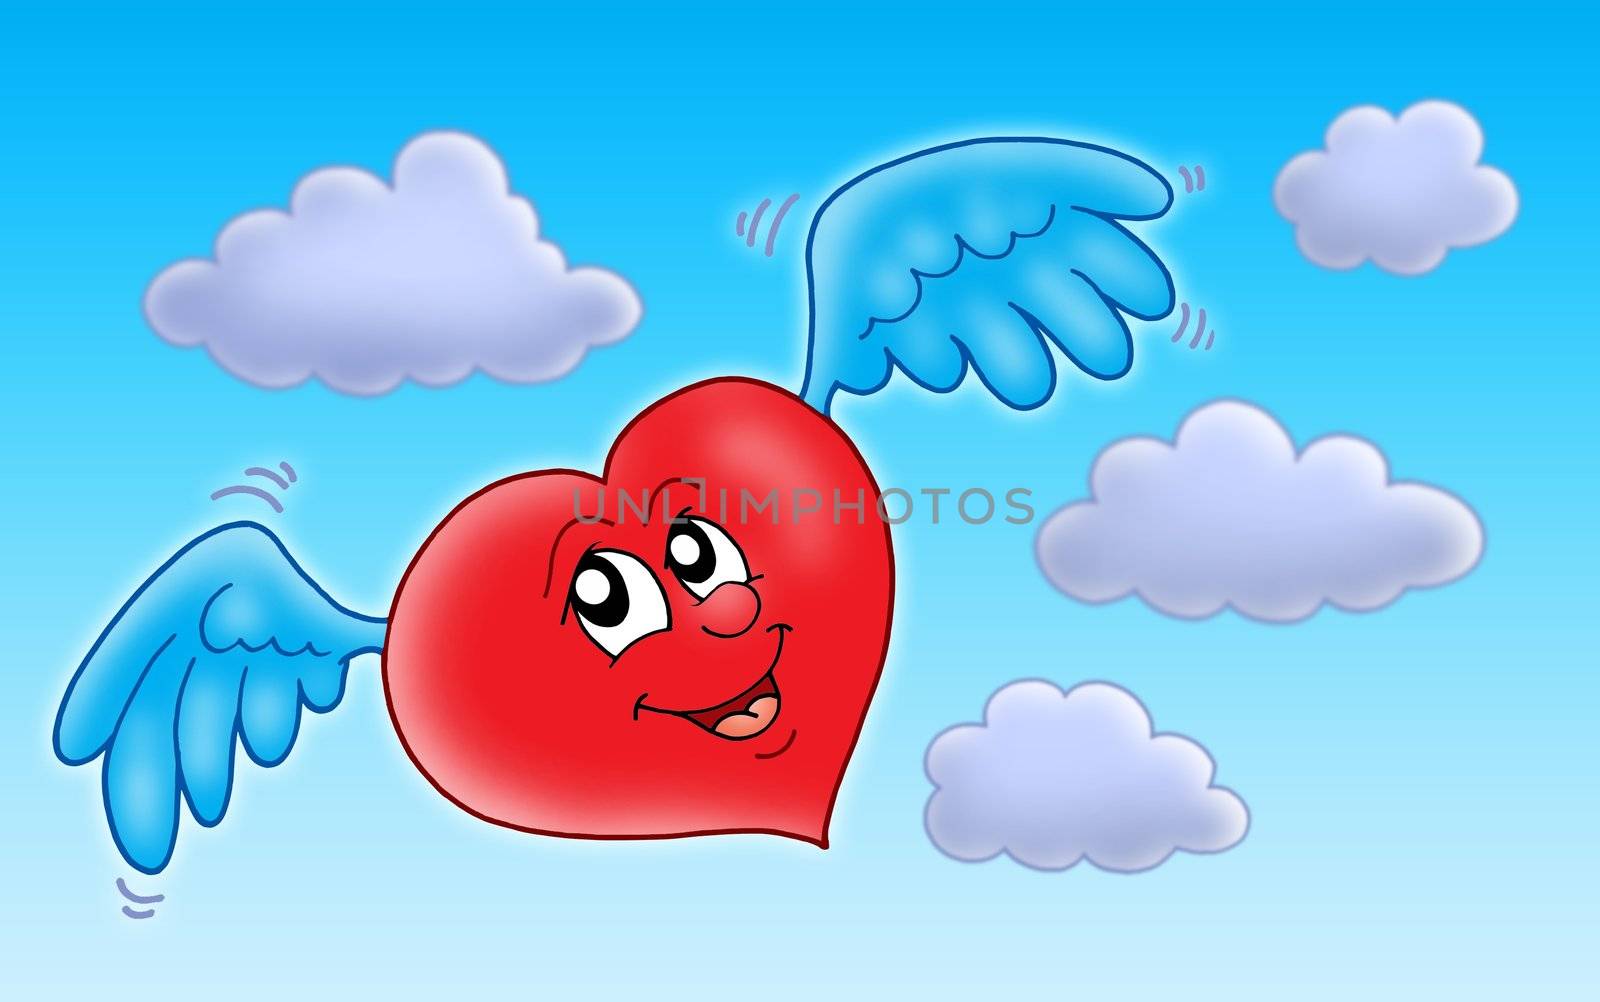 Flying heart on blue sky - color illustration.